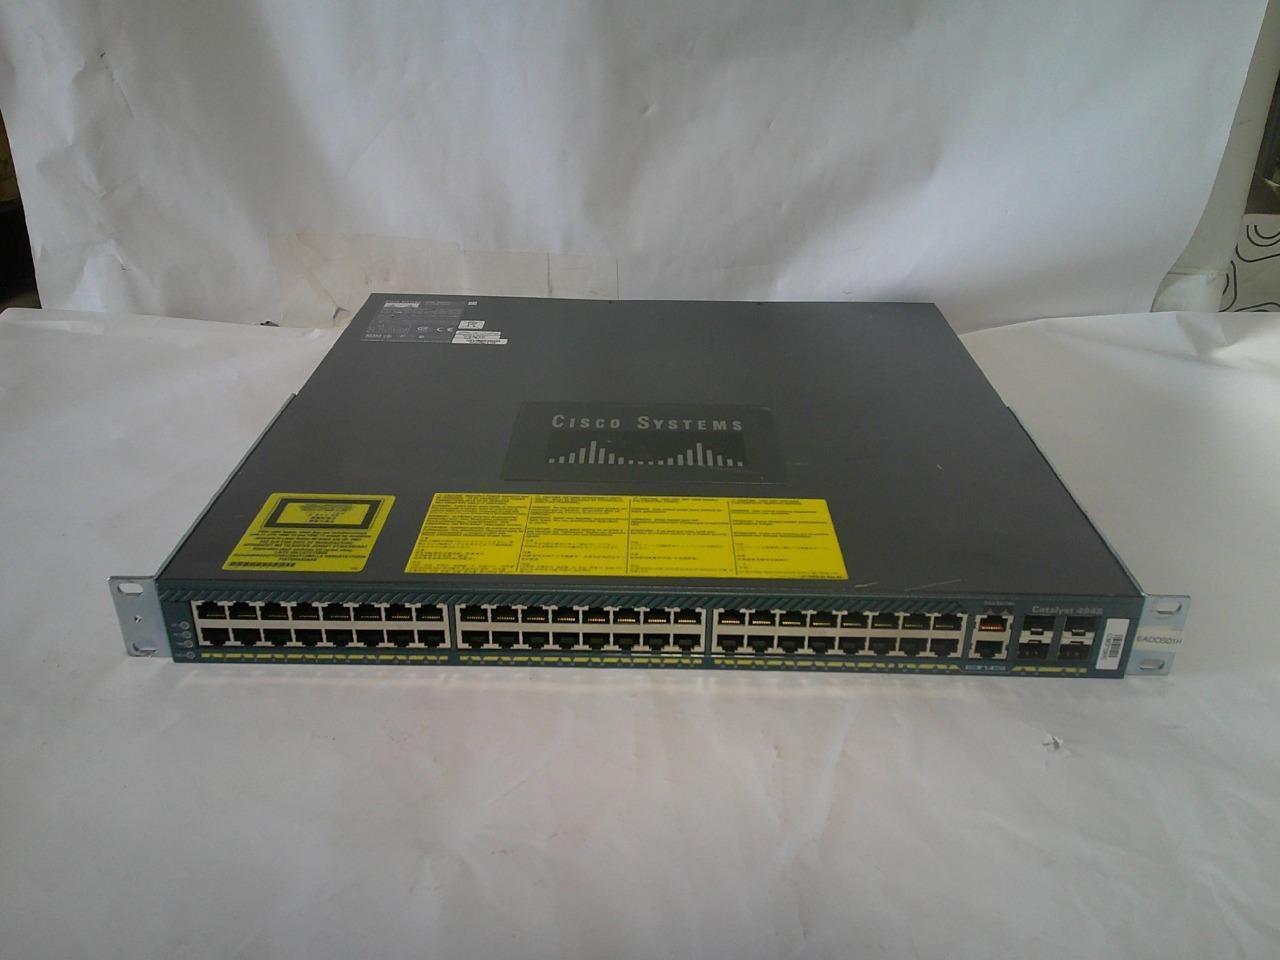 Cisco Catalyst 4948 WS-C4948-E 48 Port Gigabit Switch